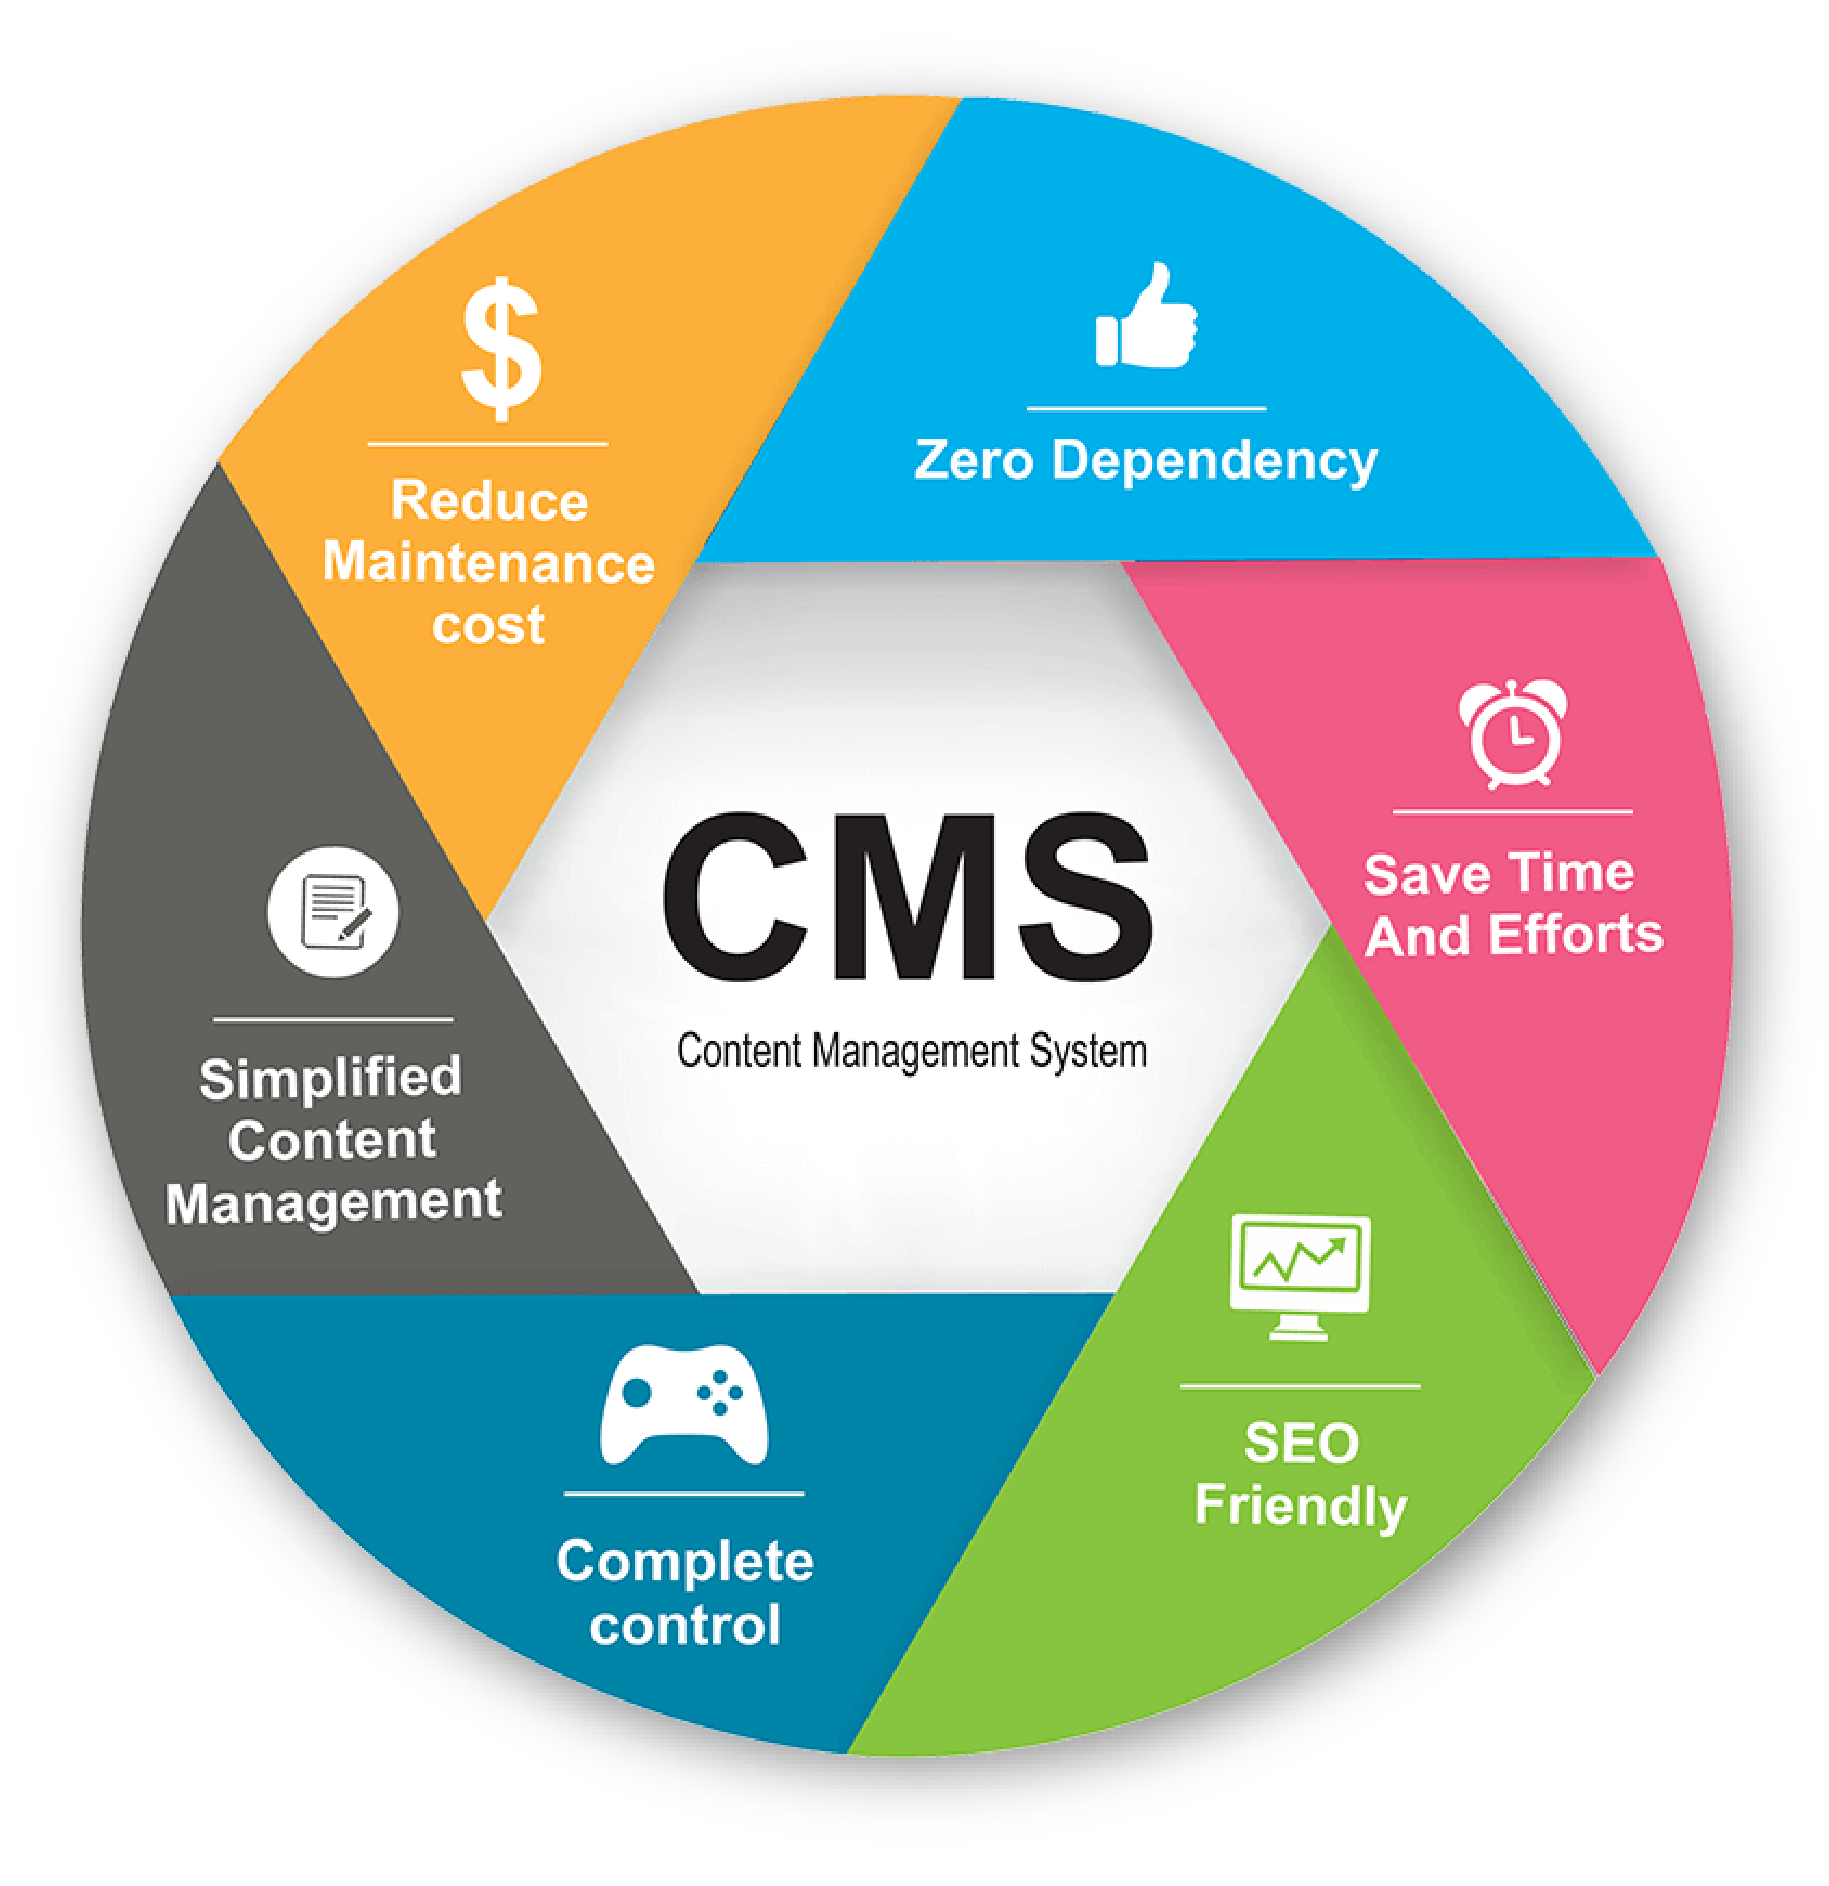 content management system (CMS)